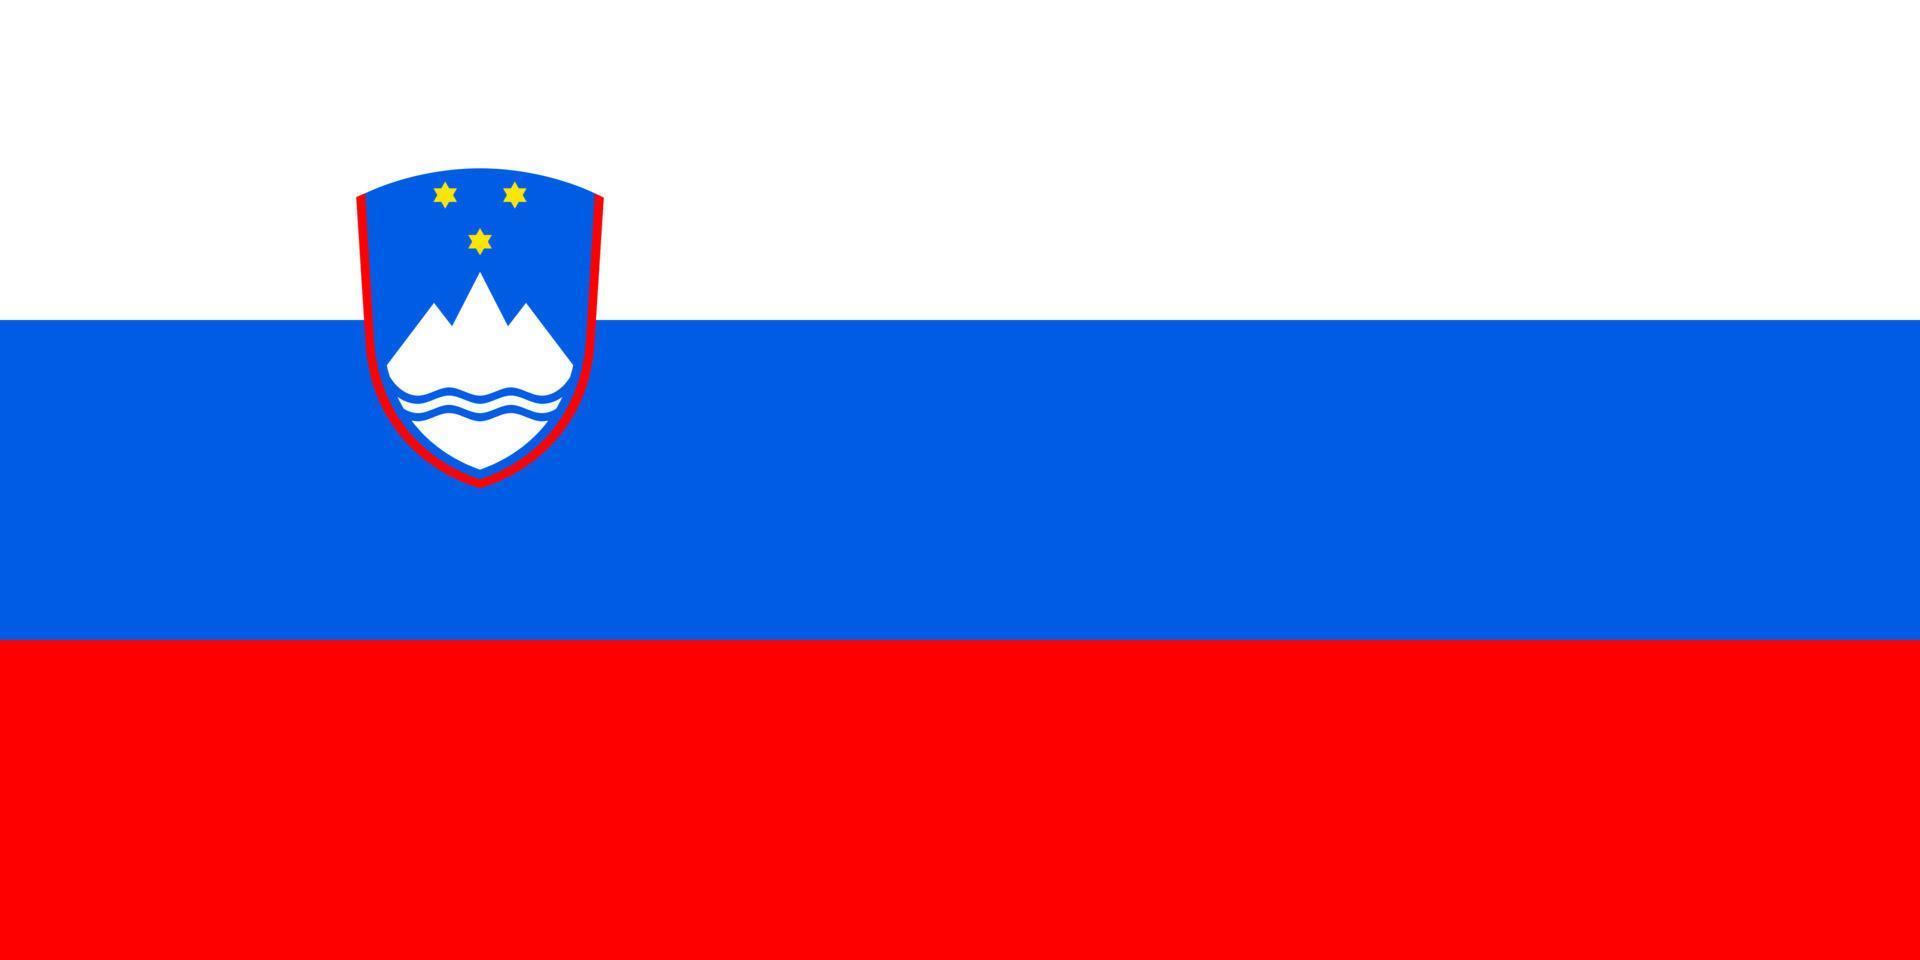 Slovenië vlag eenvoudige illustratie voor onafhankelijkheidsdag of verkiezing vector